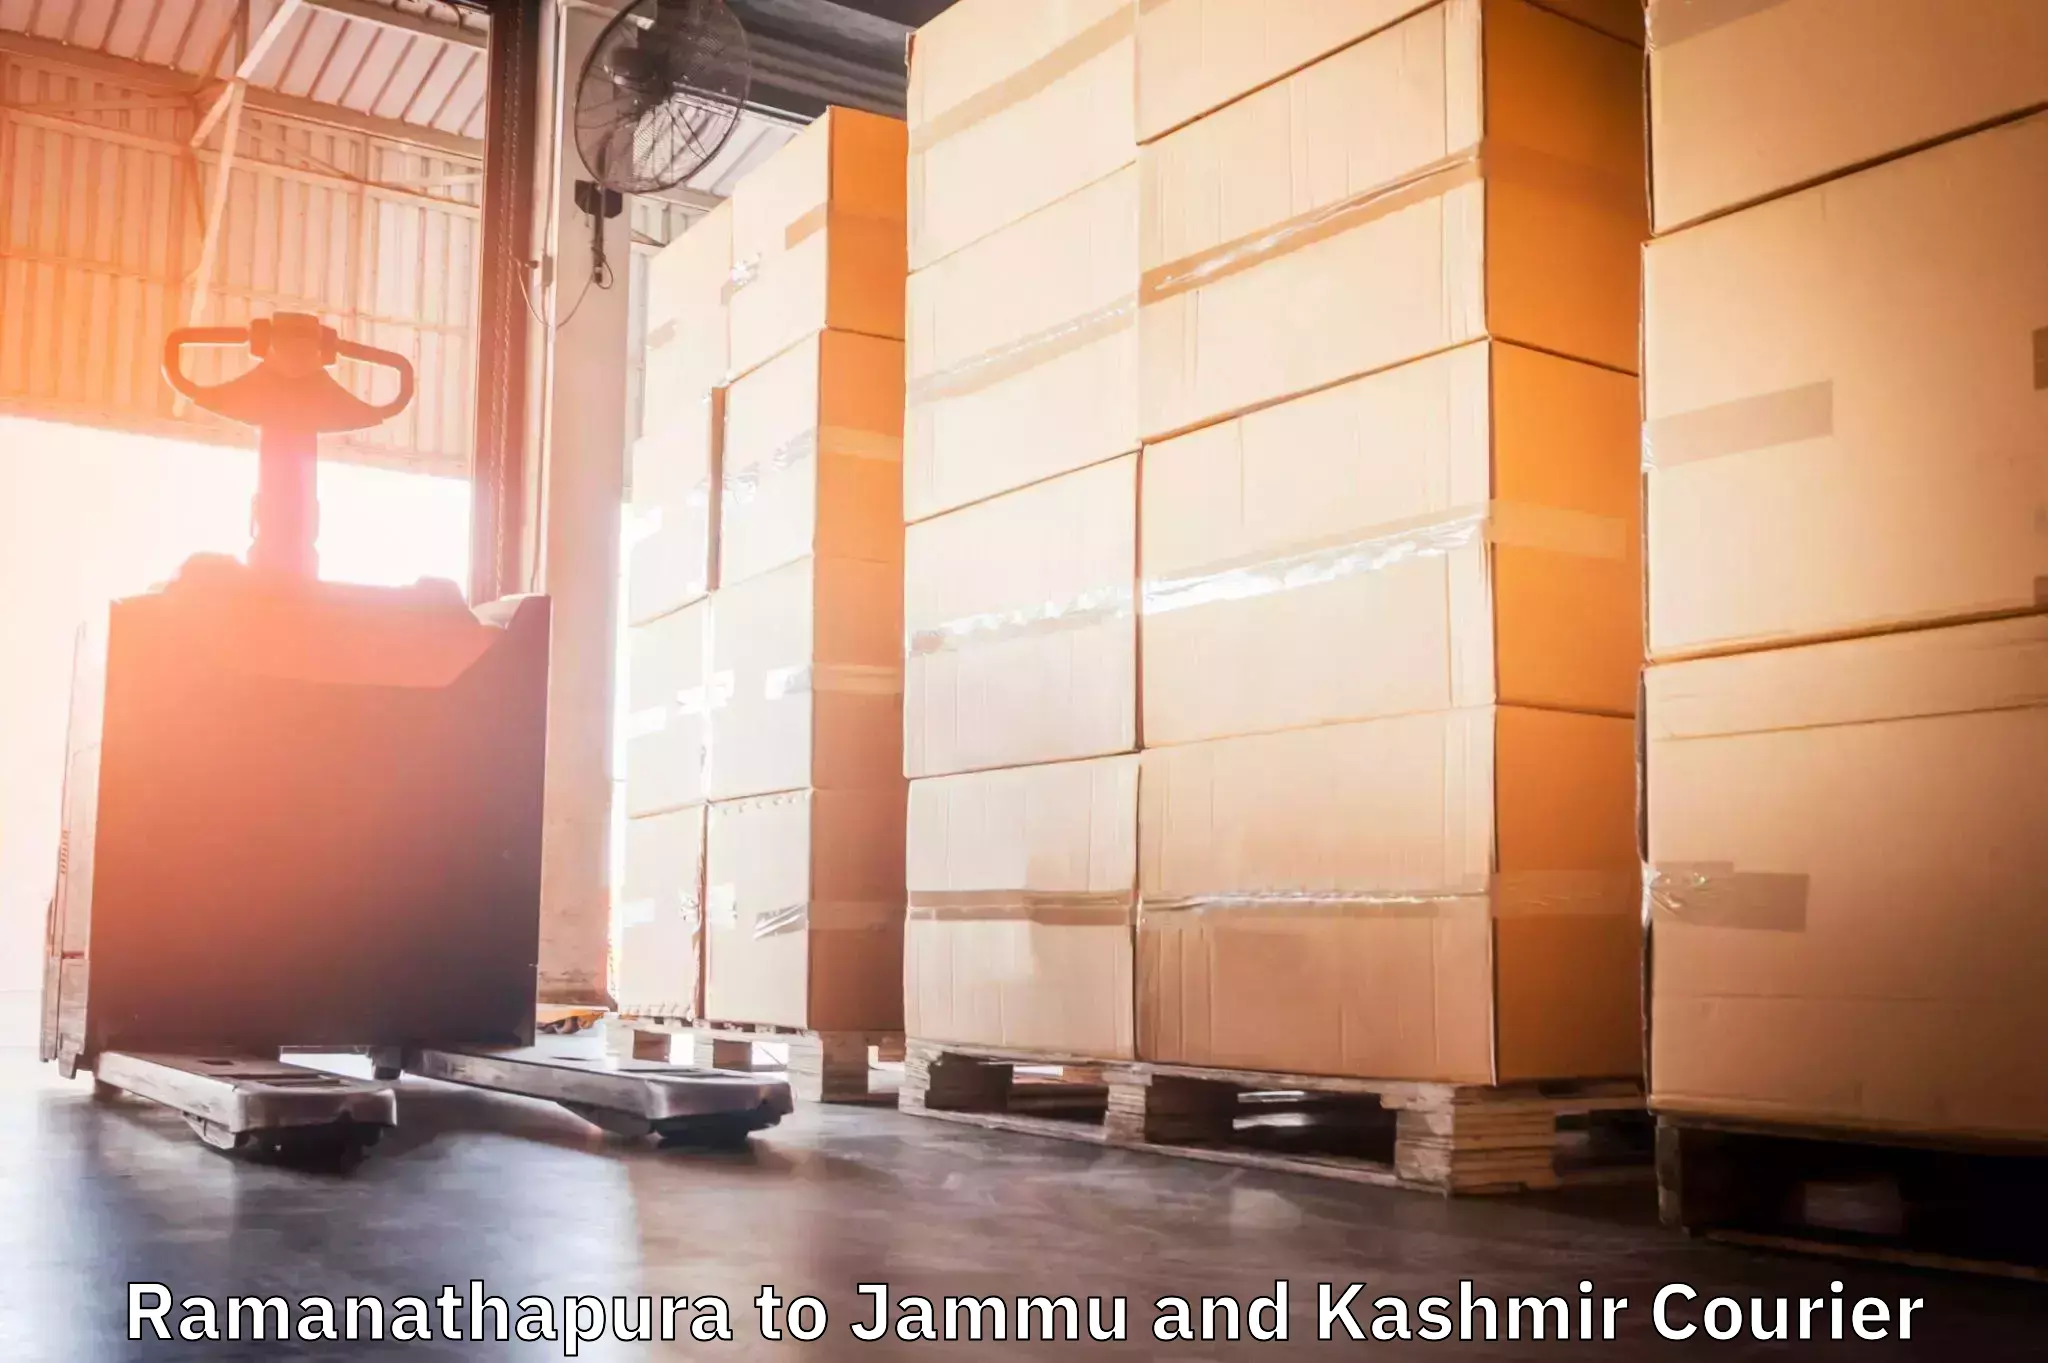 Regular parcel service Ramanathapura to IIT Jammu